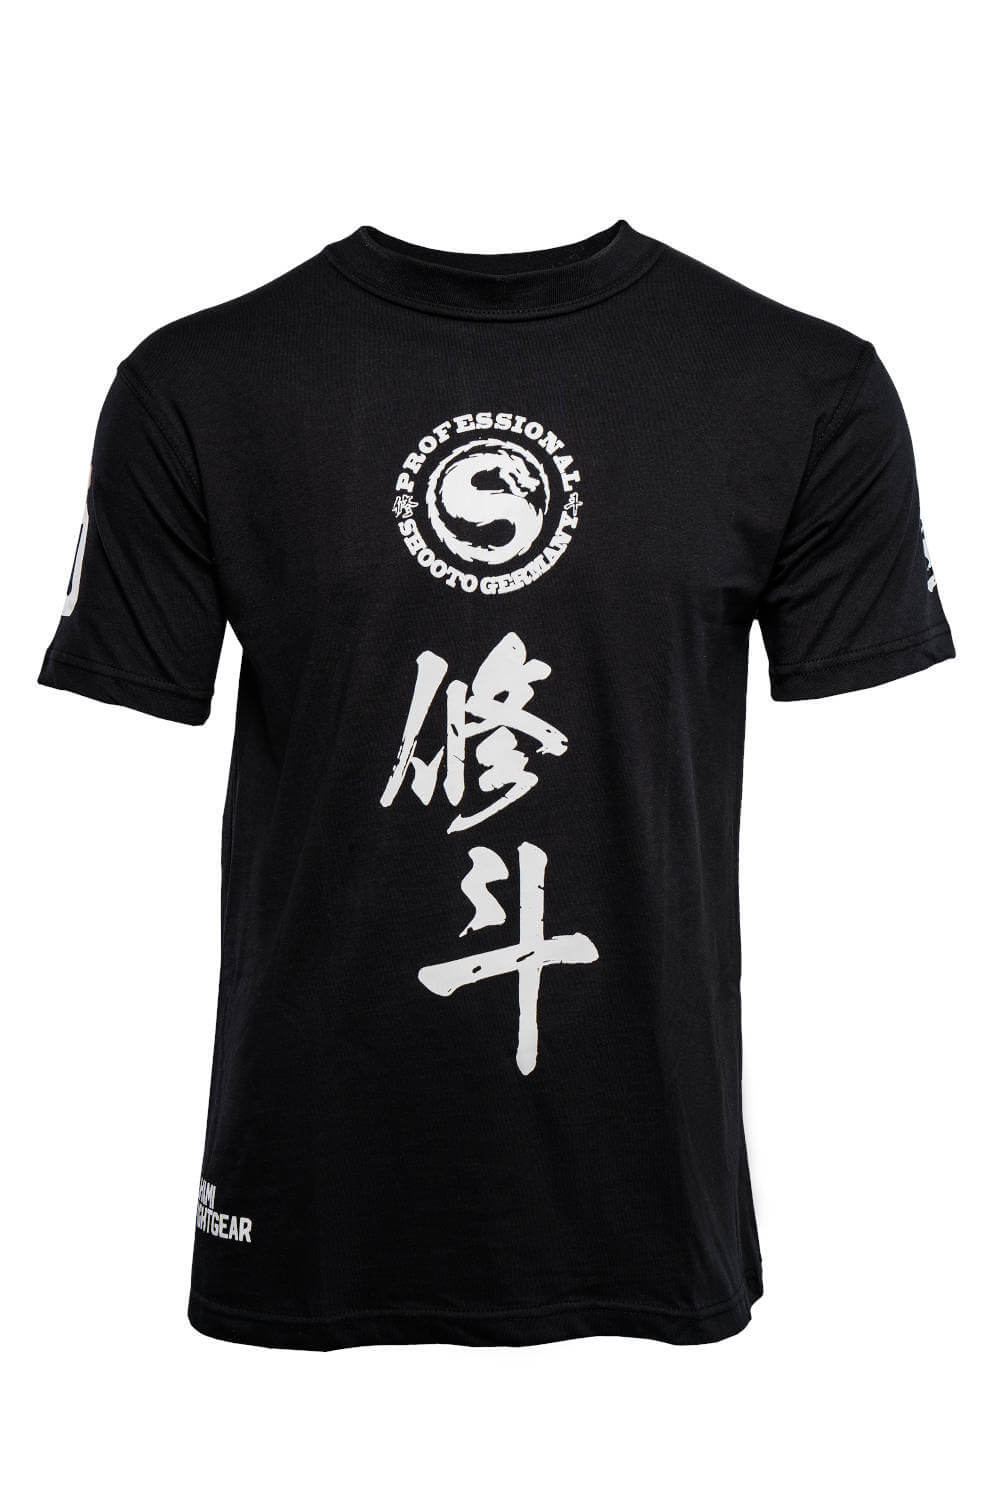 Okami fightgear T-Shirt Shooto Germany - BORN ON THE MATS